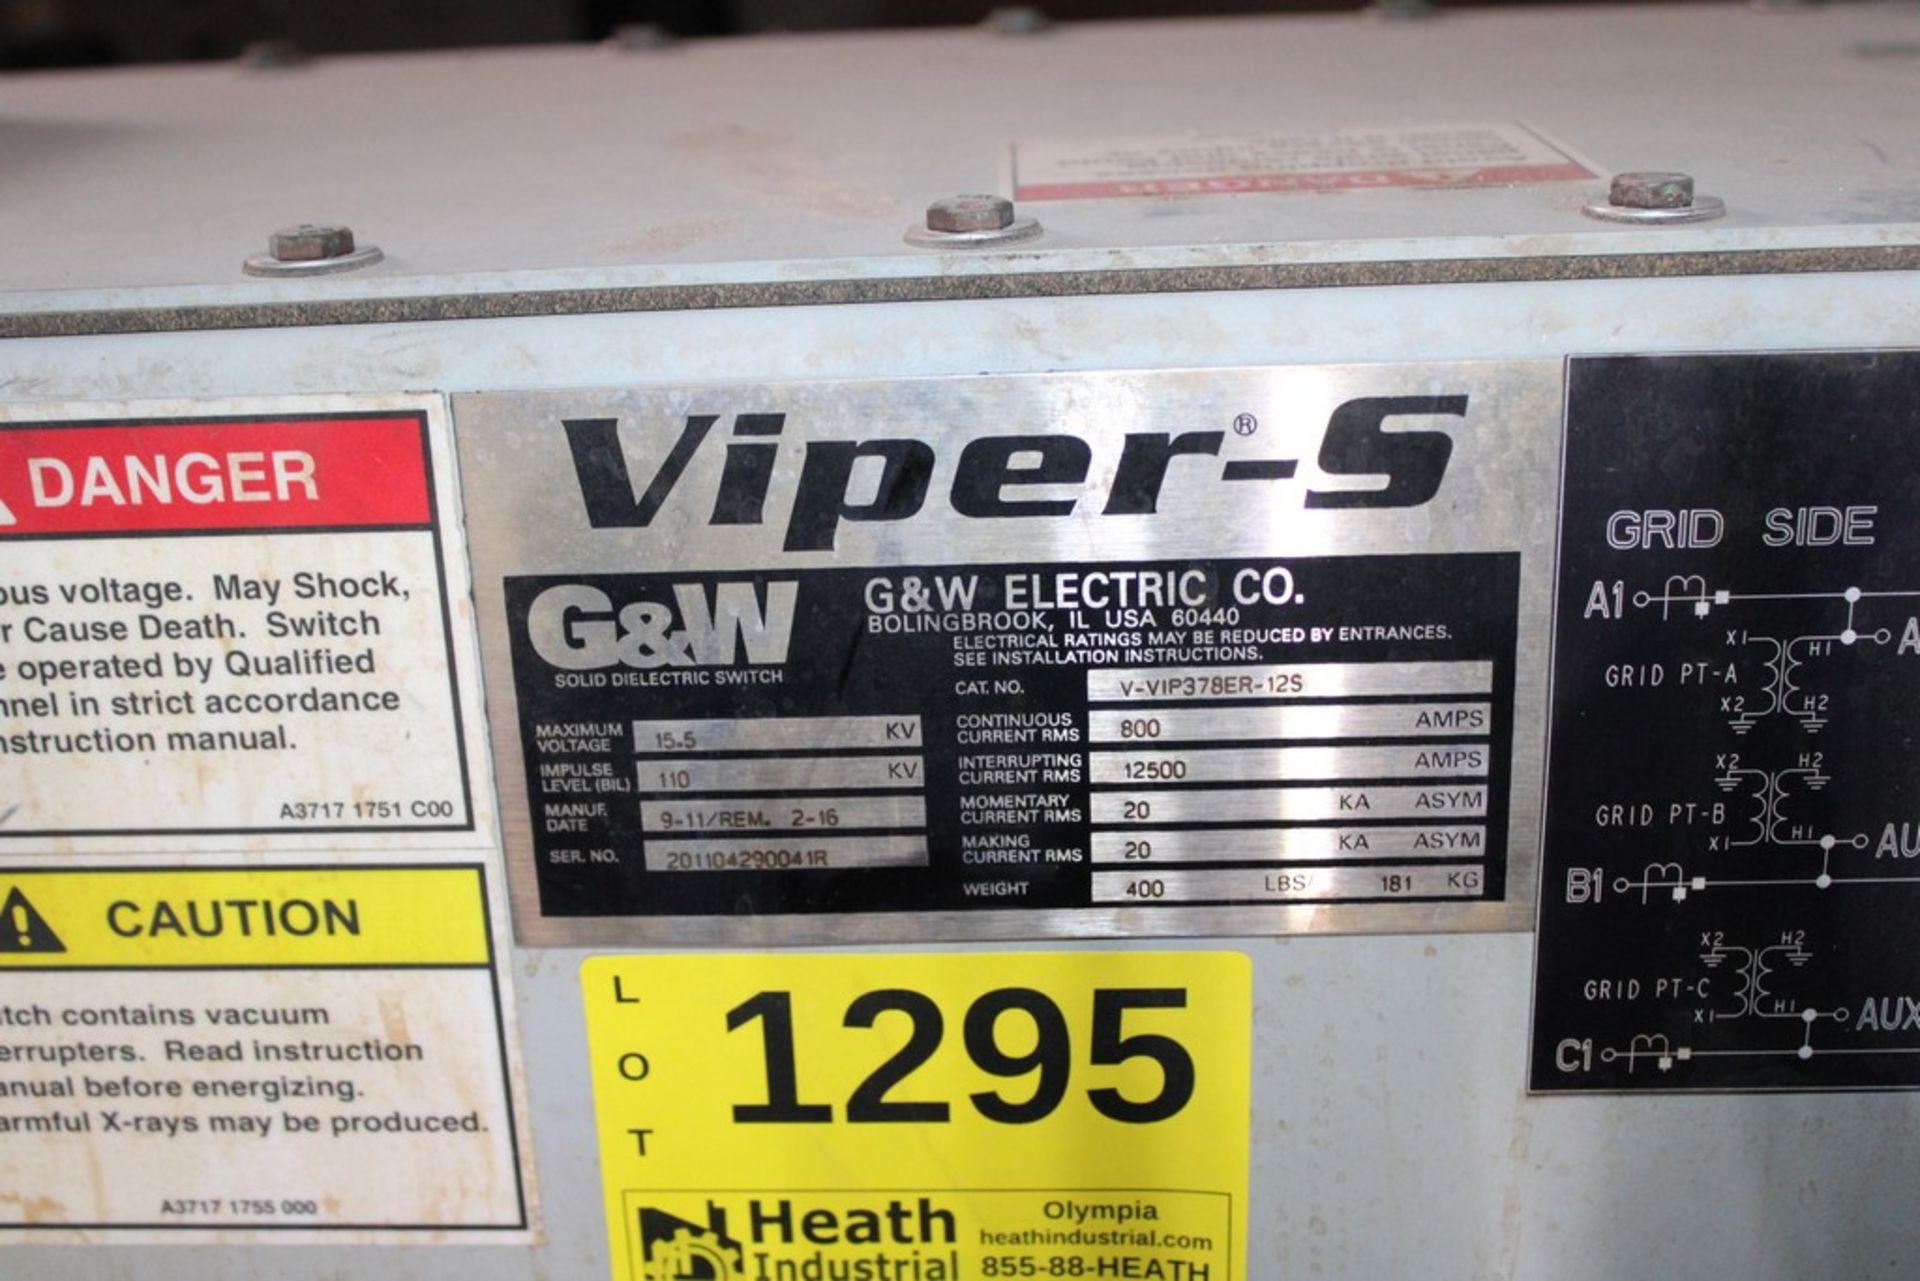 G & W VIPER-S CAT NO. V-VIP378ER-125 15.5 KV, 800 AMP, 3-PHASE RECLOSER - Image 2 of 2